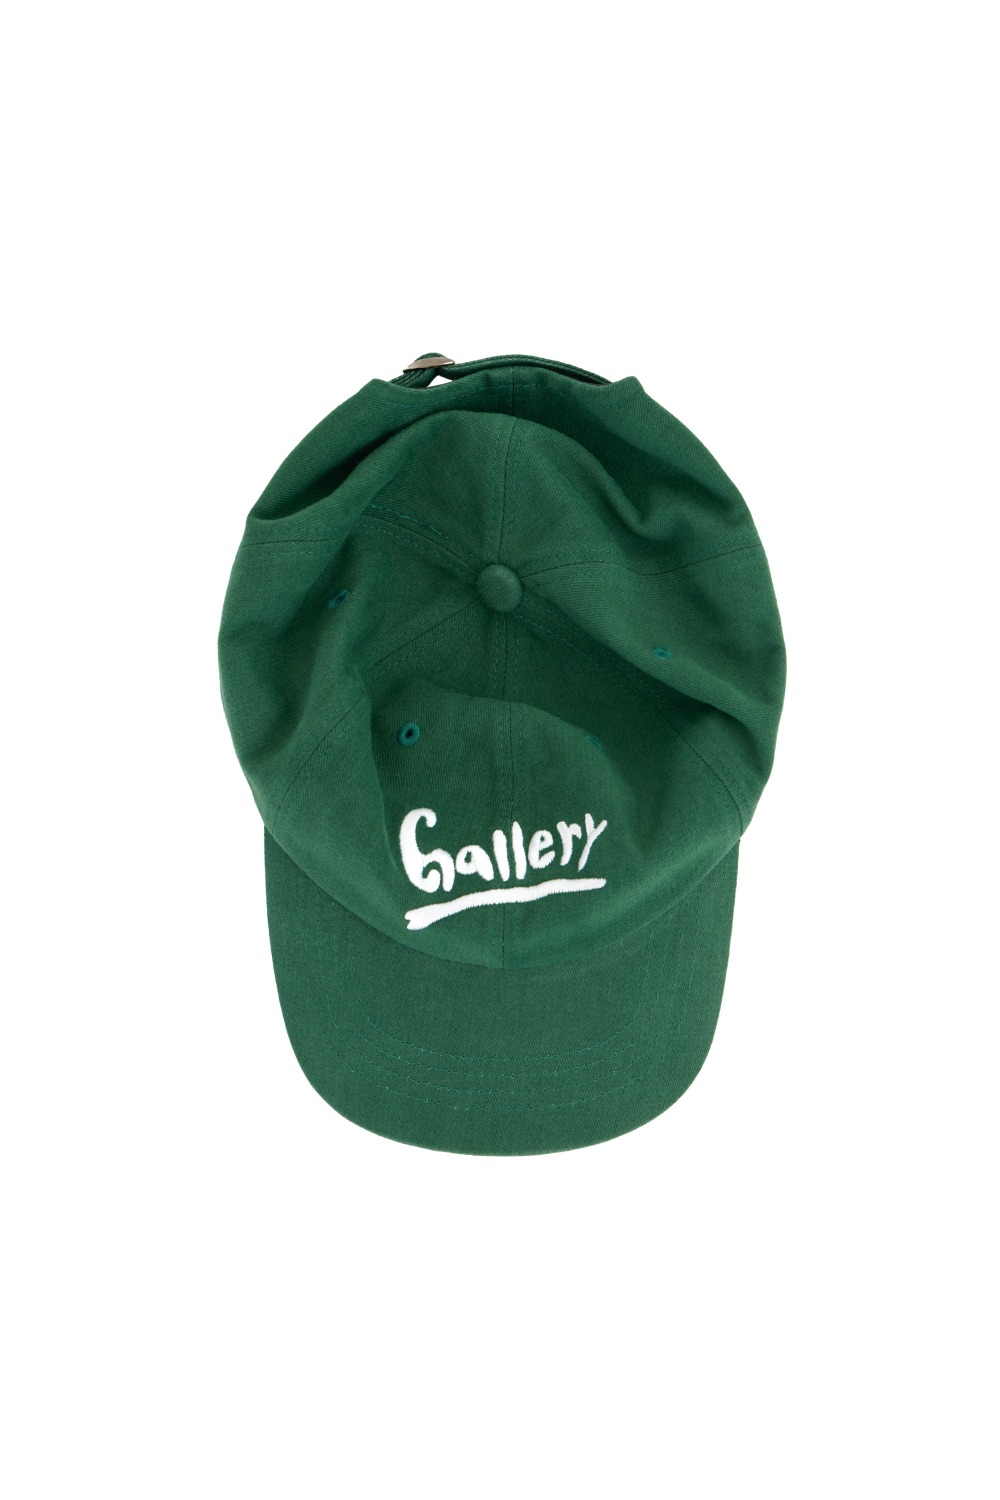 Gallery Ball Cap - Green